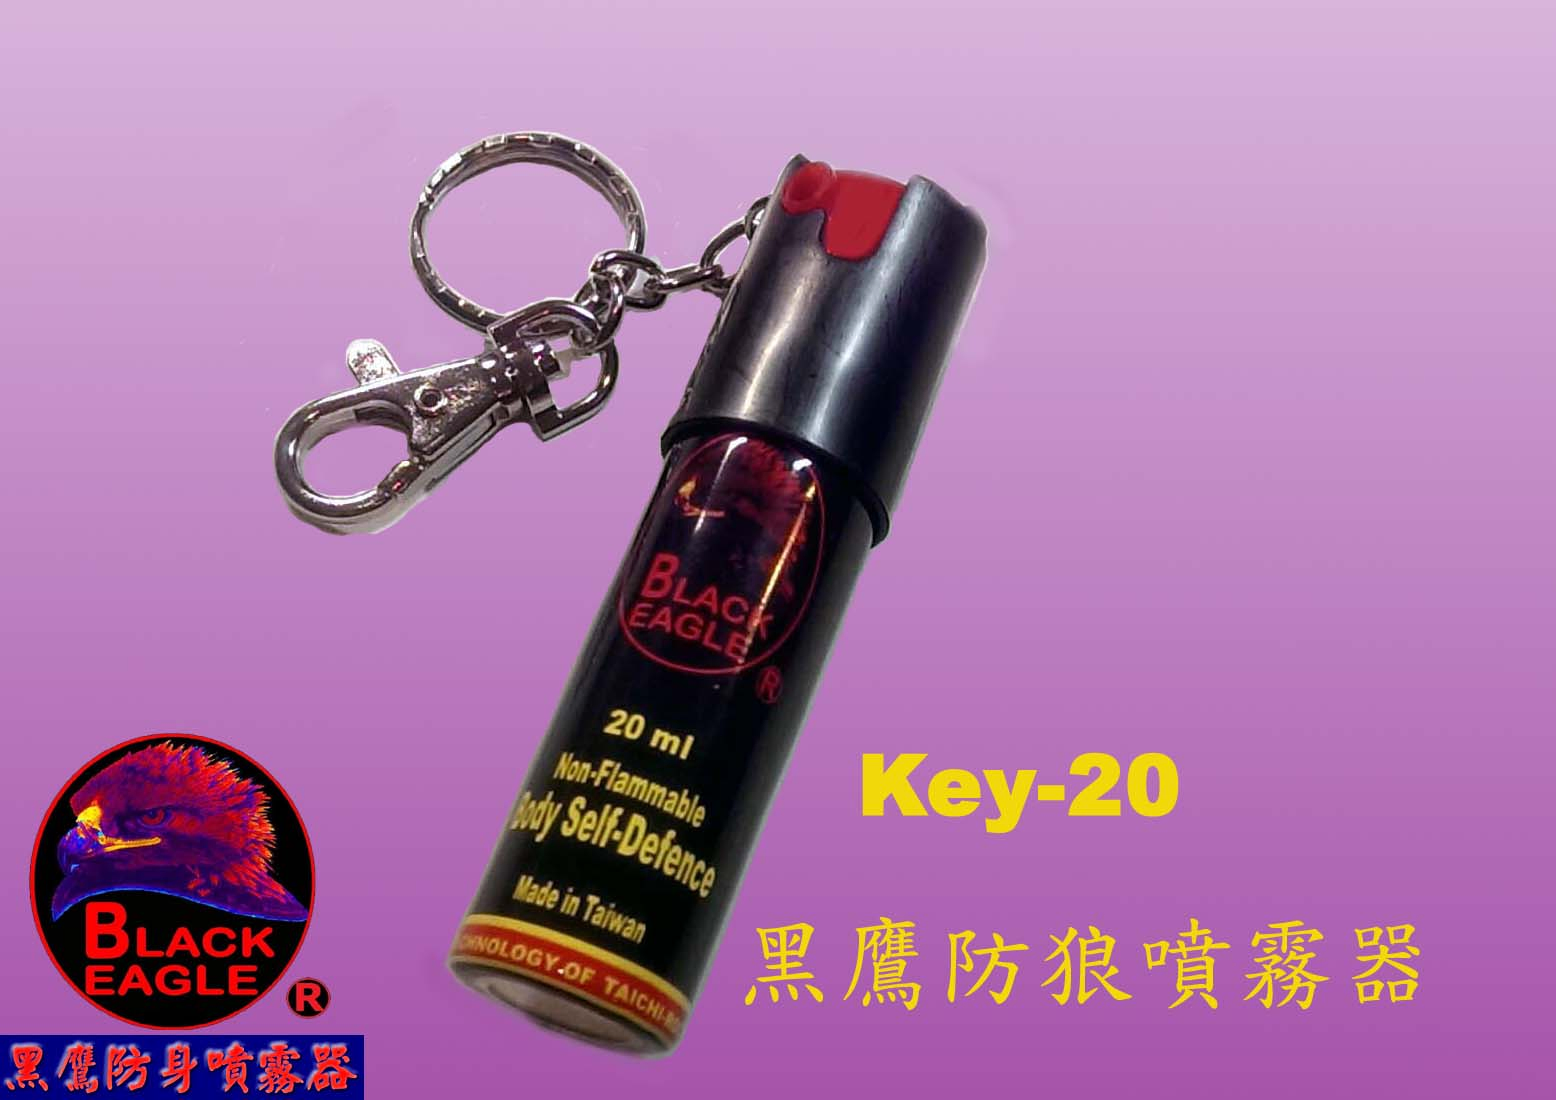 黑鷹  婦女防狼噴霧器 Key-20